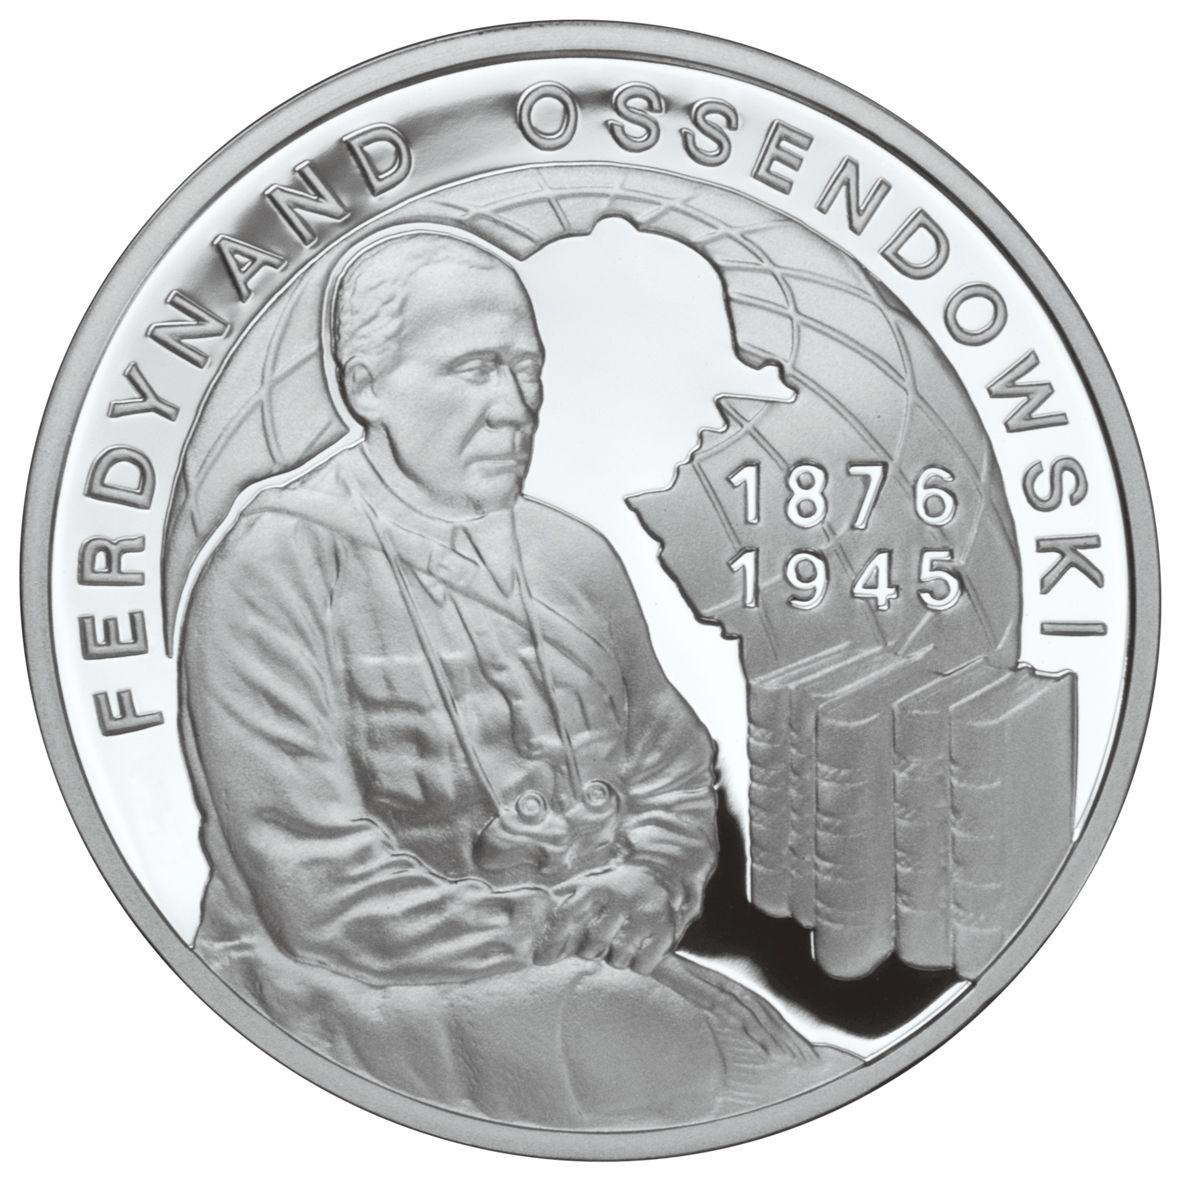 10zl-ferdynand-ossendowski-1876-1945-rewers-monety